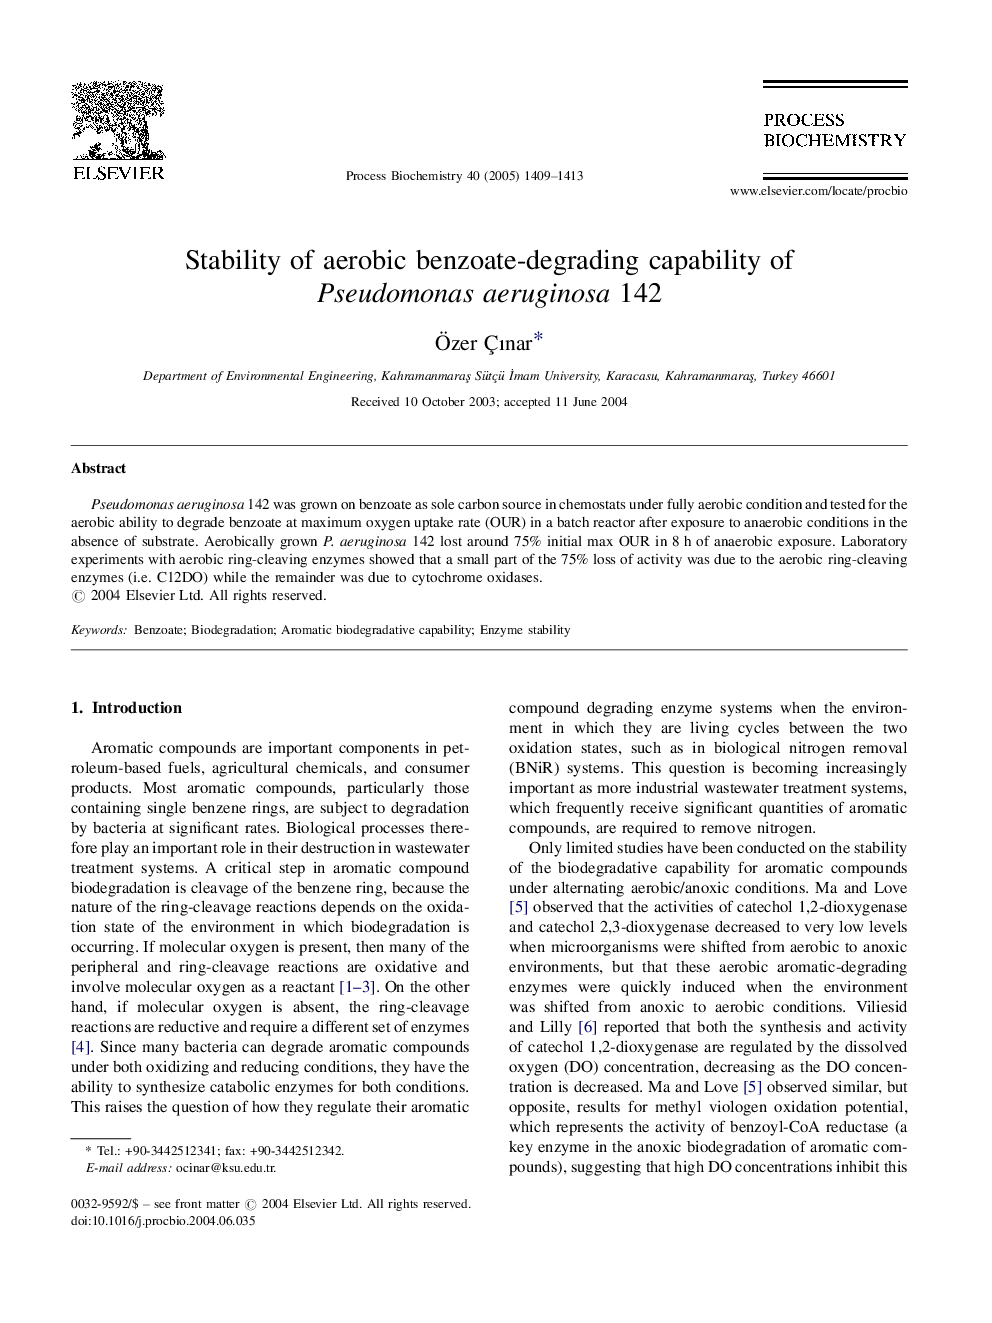 Stability of aerobic benzoate-degrading capability of Pseudomonas aeruginosa 142